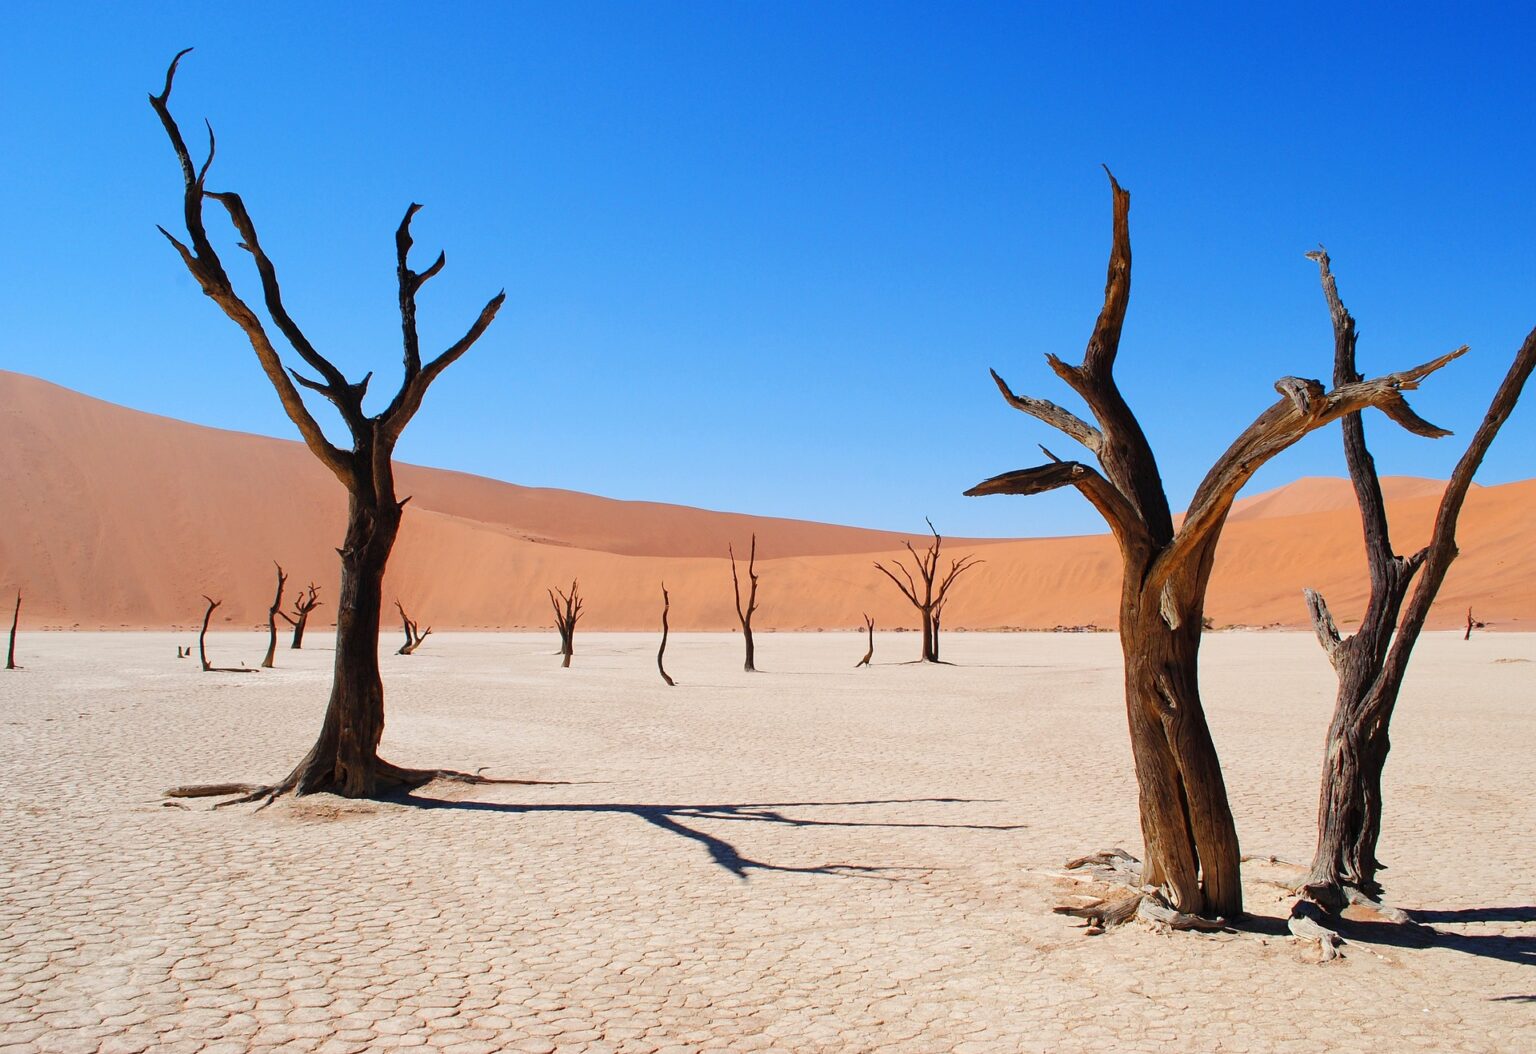 Namib, Africa's Oldest Desert